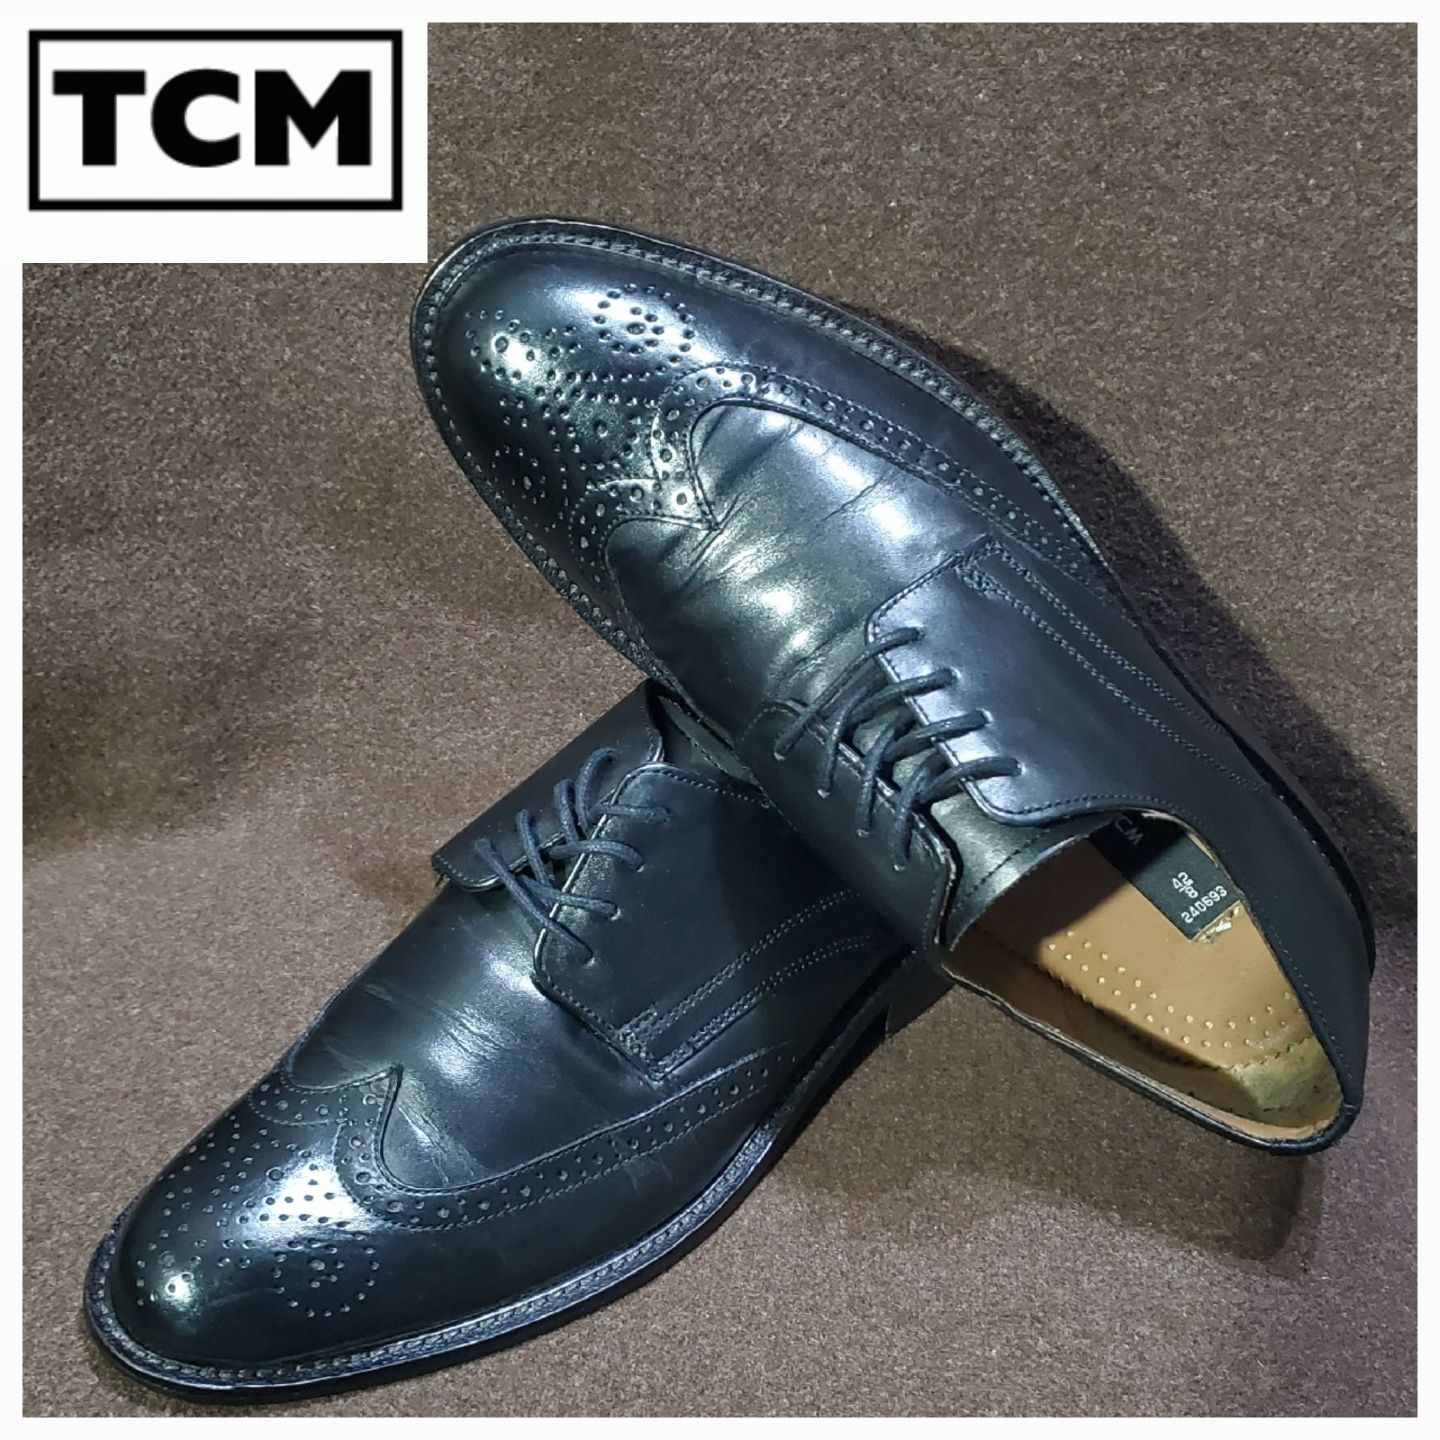 мужские туфли, броги, TCM Tchibo ( р 42 / 28 см )